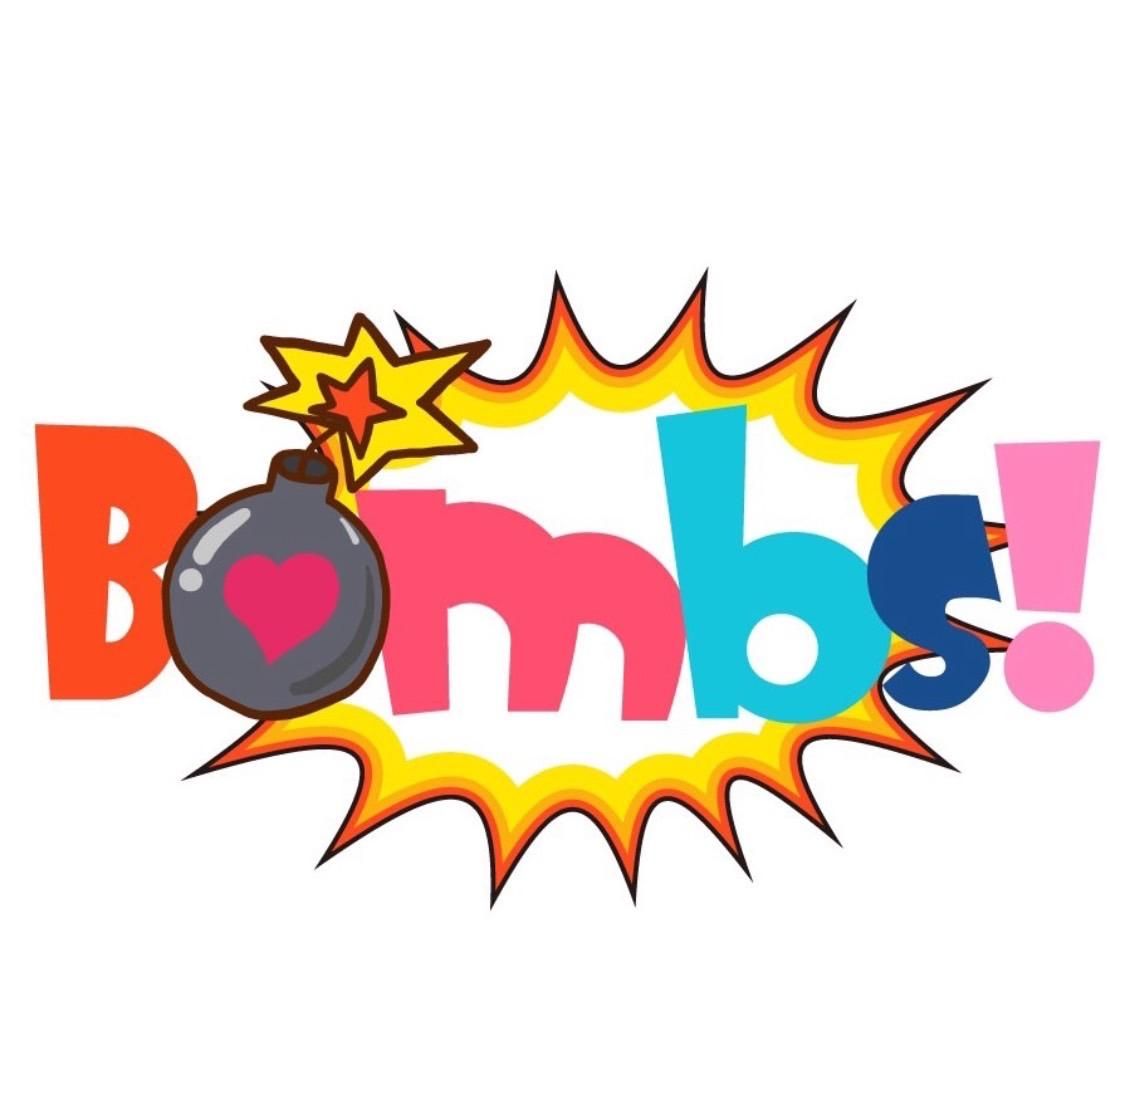 筑波大学アイドル研究会Bombs!のサムネイル画像